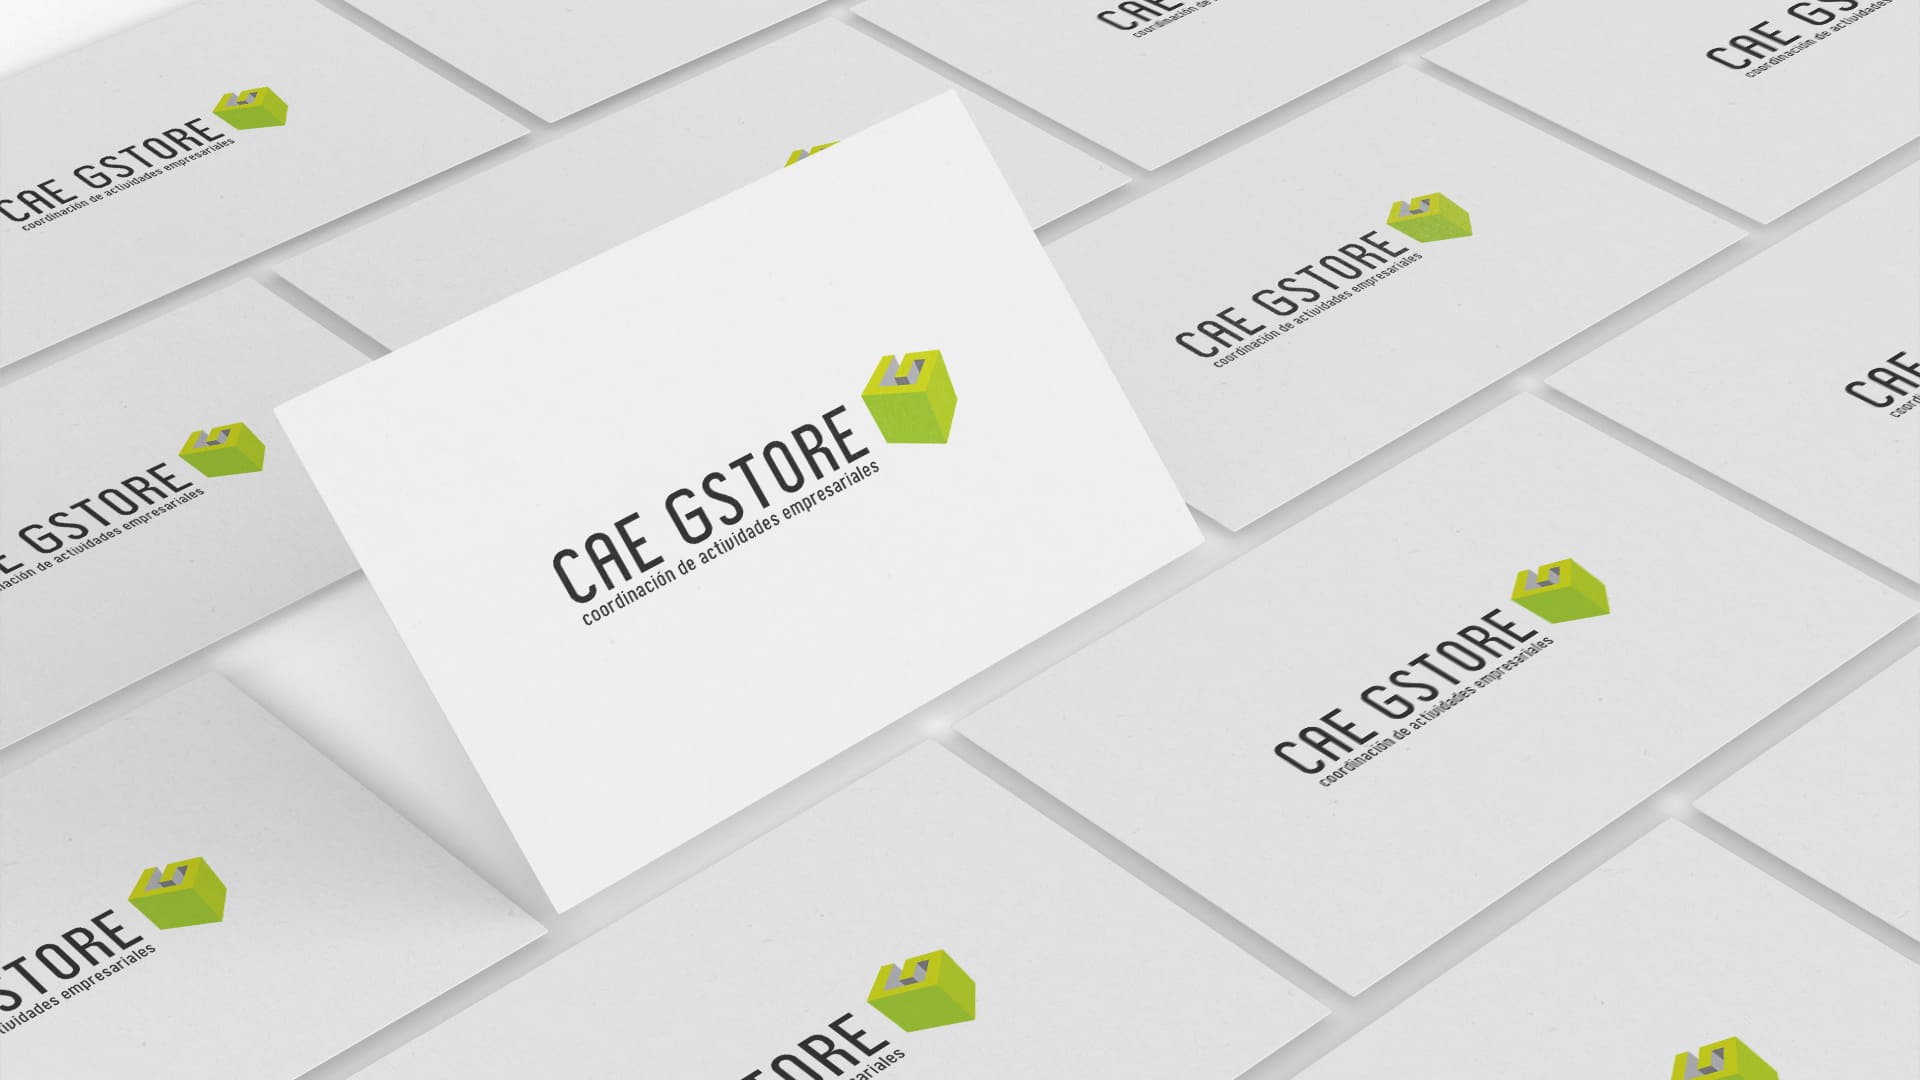 Diseño de Logotipo para Cae Gstore, Montaje de logotipo en formato tarjetas